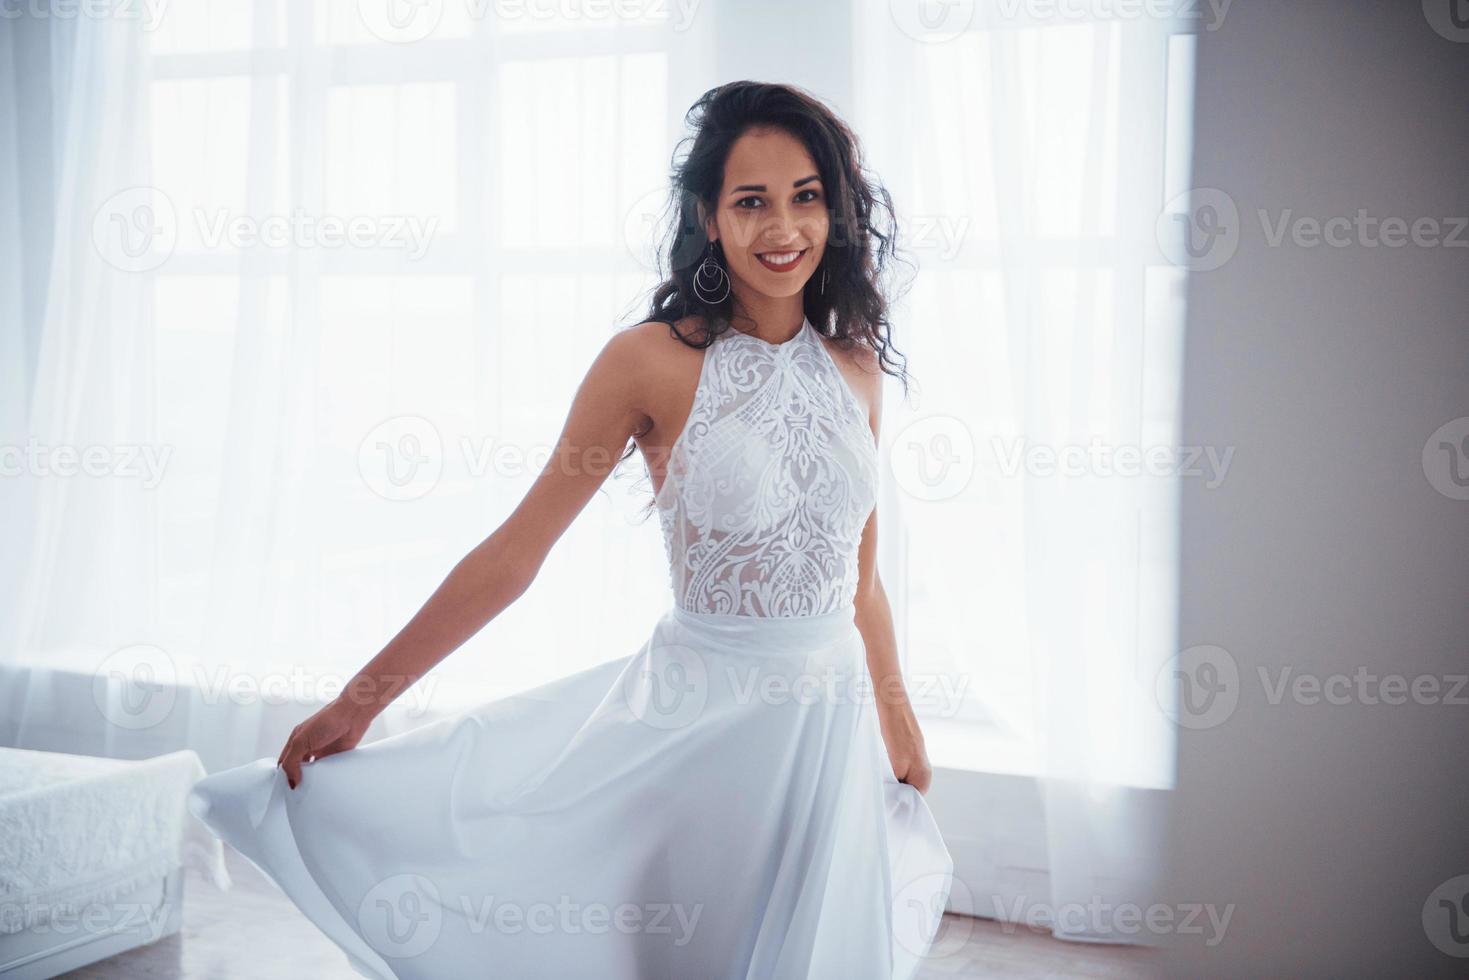 klassieke kleding voor dans- en luxefeesten. mooie vrouw in witte jurk staat in witte kamer met daglicht door de ramen foto